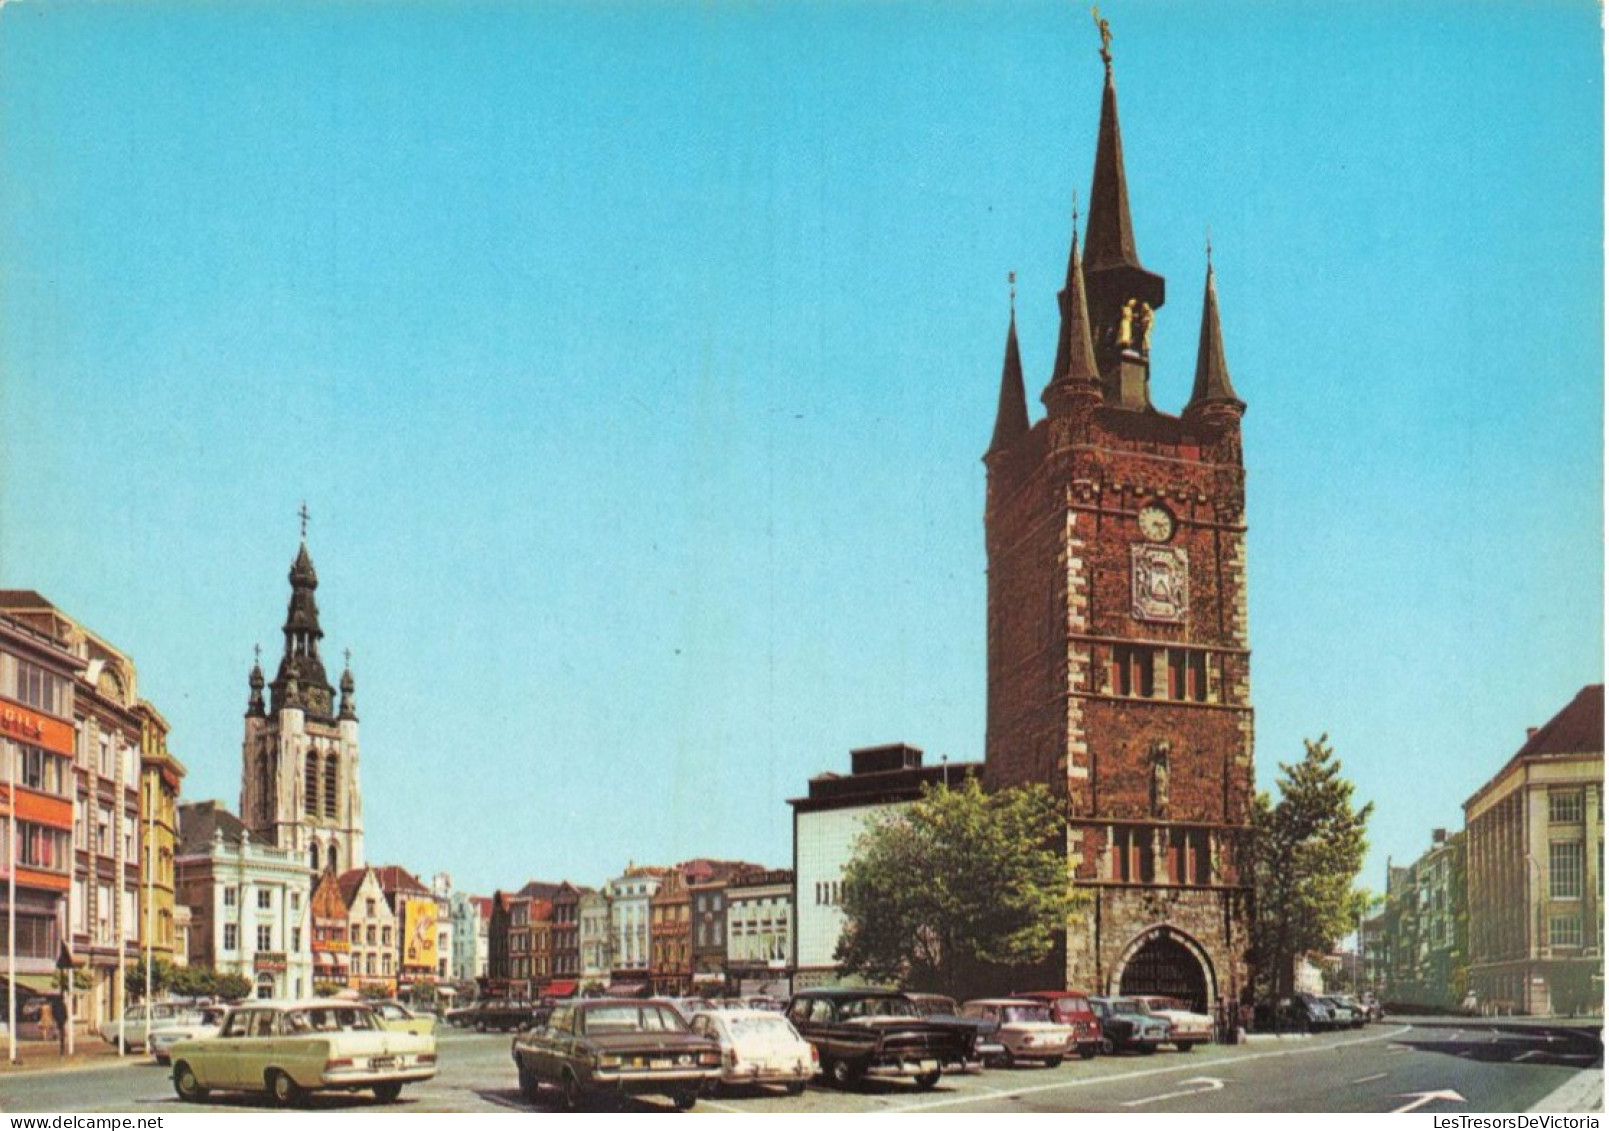 BELGIQUE - Kortrijk - Grand'place - Beffroi Et église Saint Martin - Colorisé - Carte Postale - Kortrijk